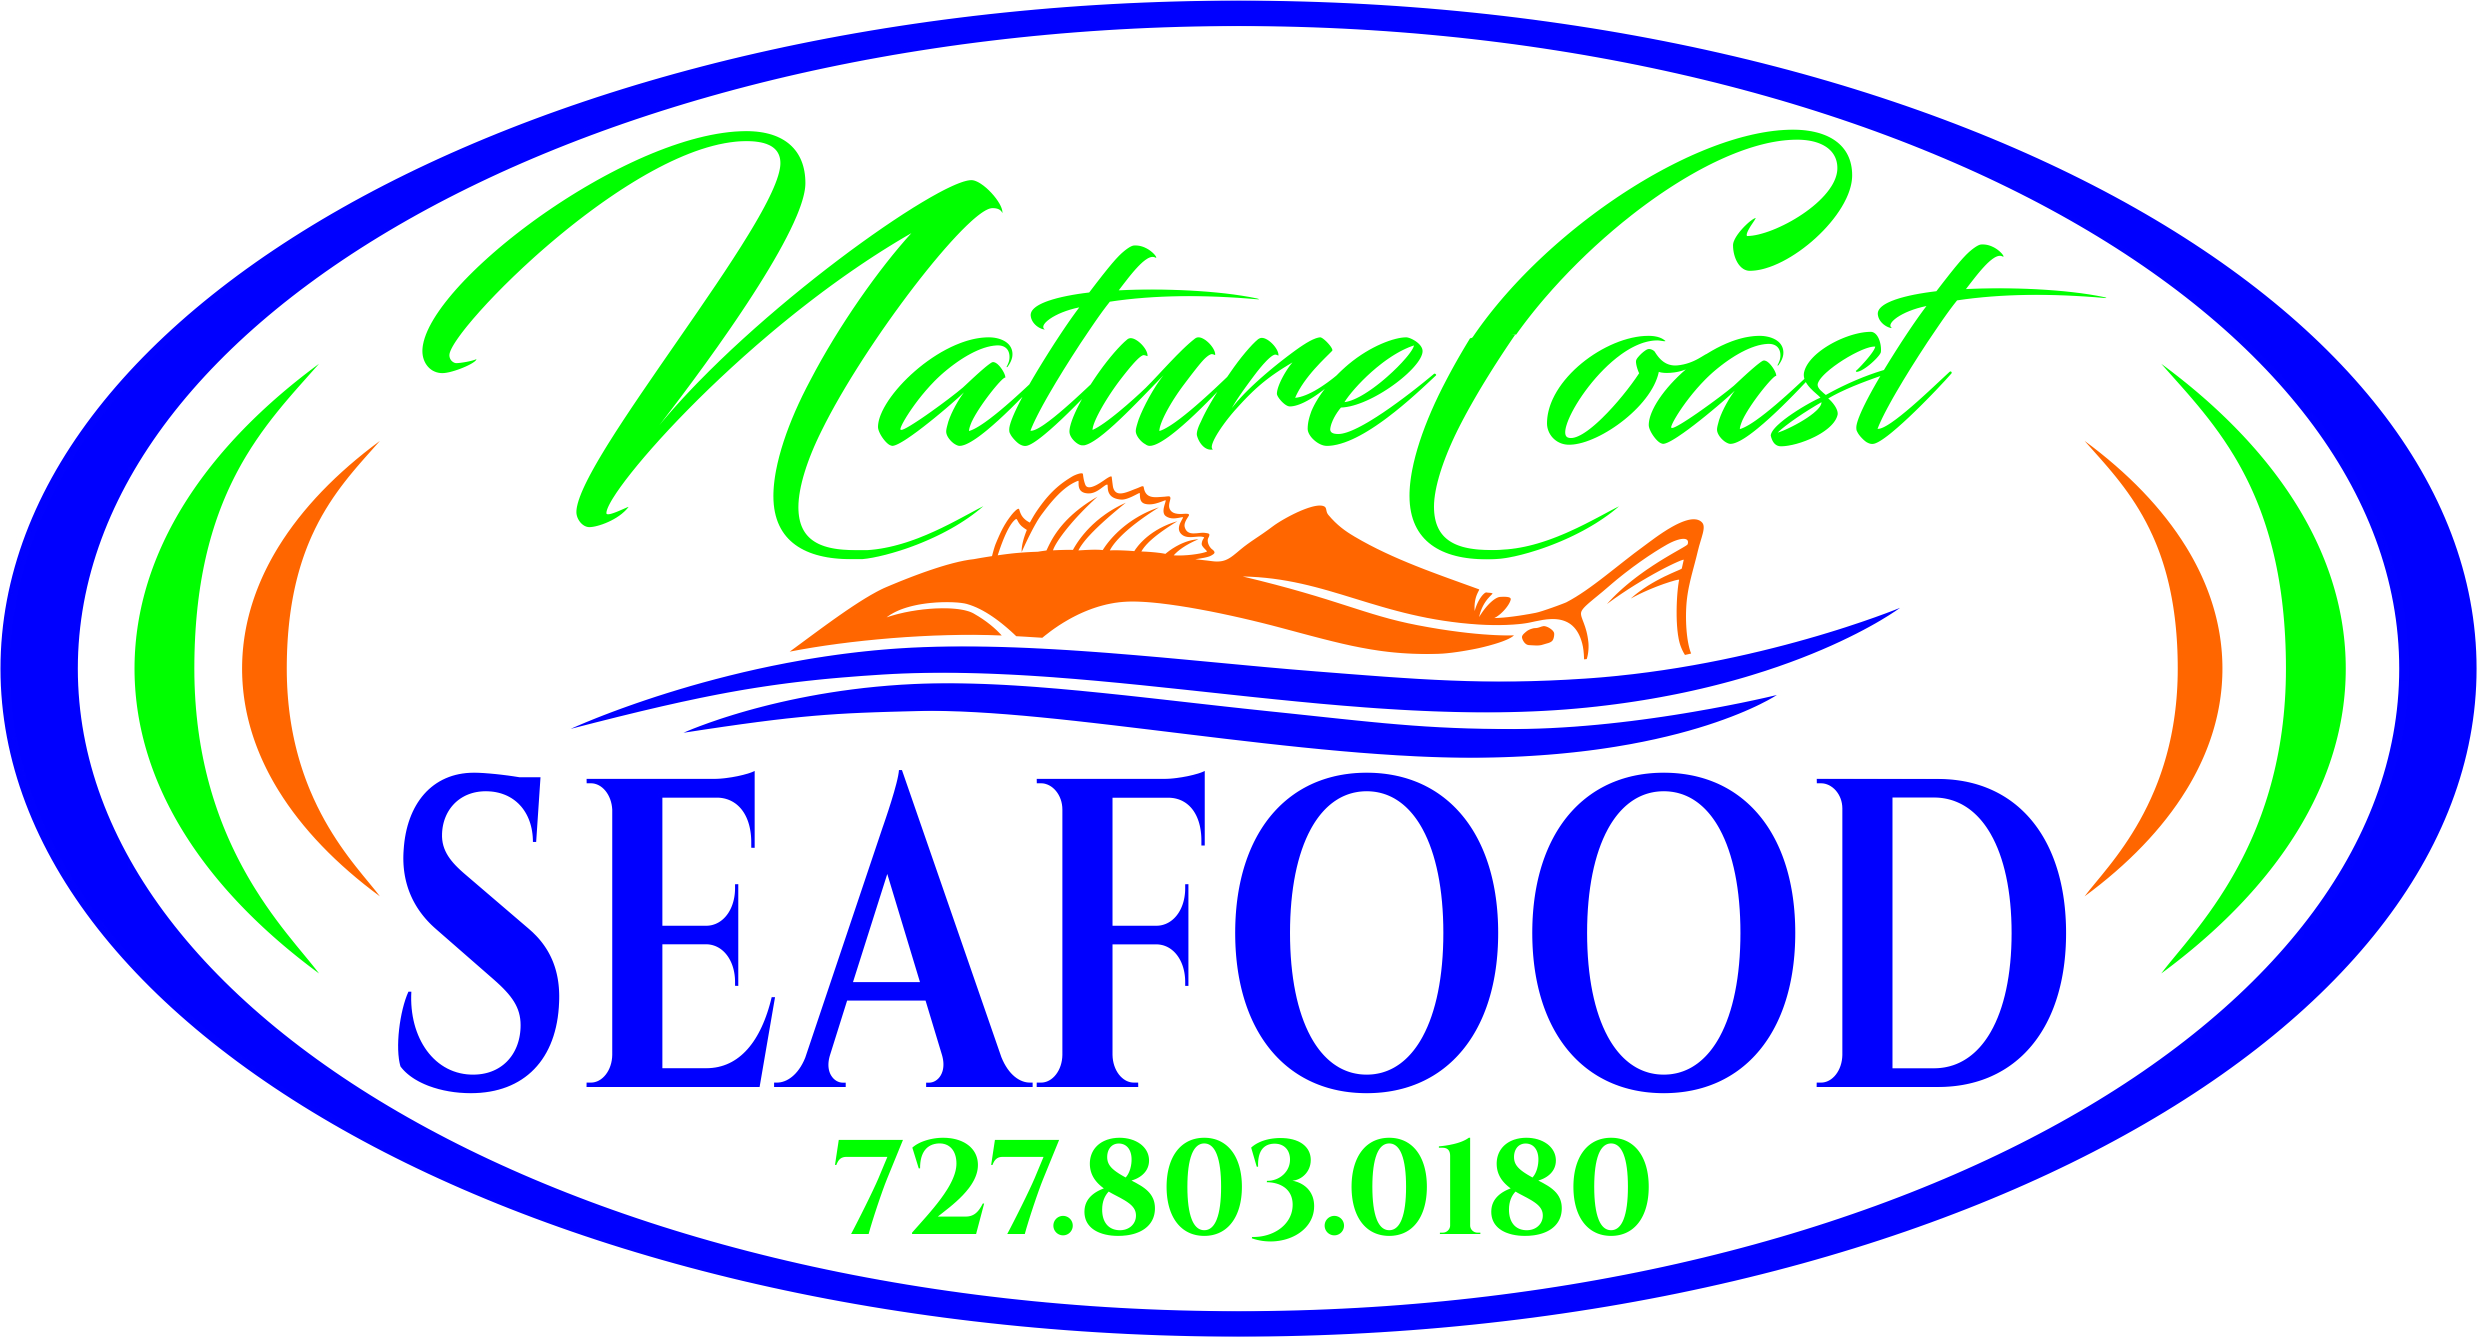 købmand eksekverbar grundlæggende Home | Nature Coast Seafood